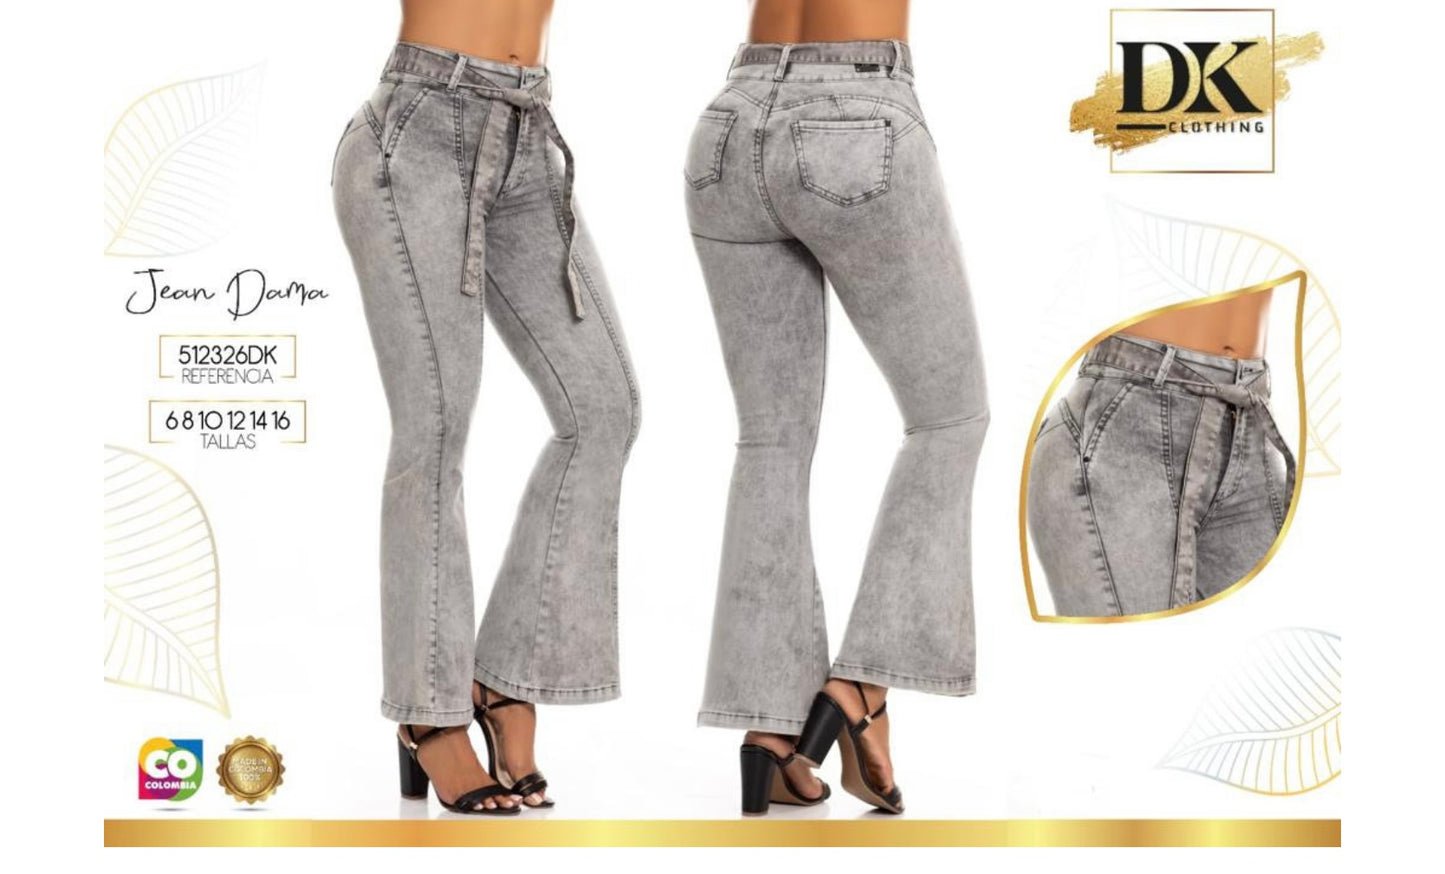 Ref:26DK Colombian Jeans